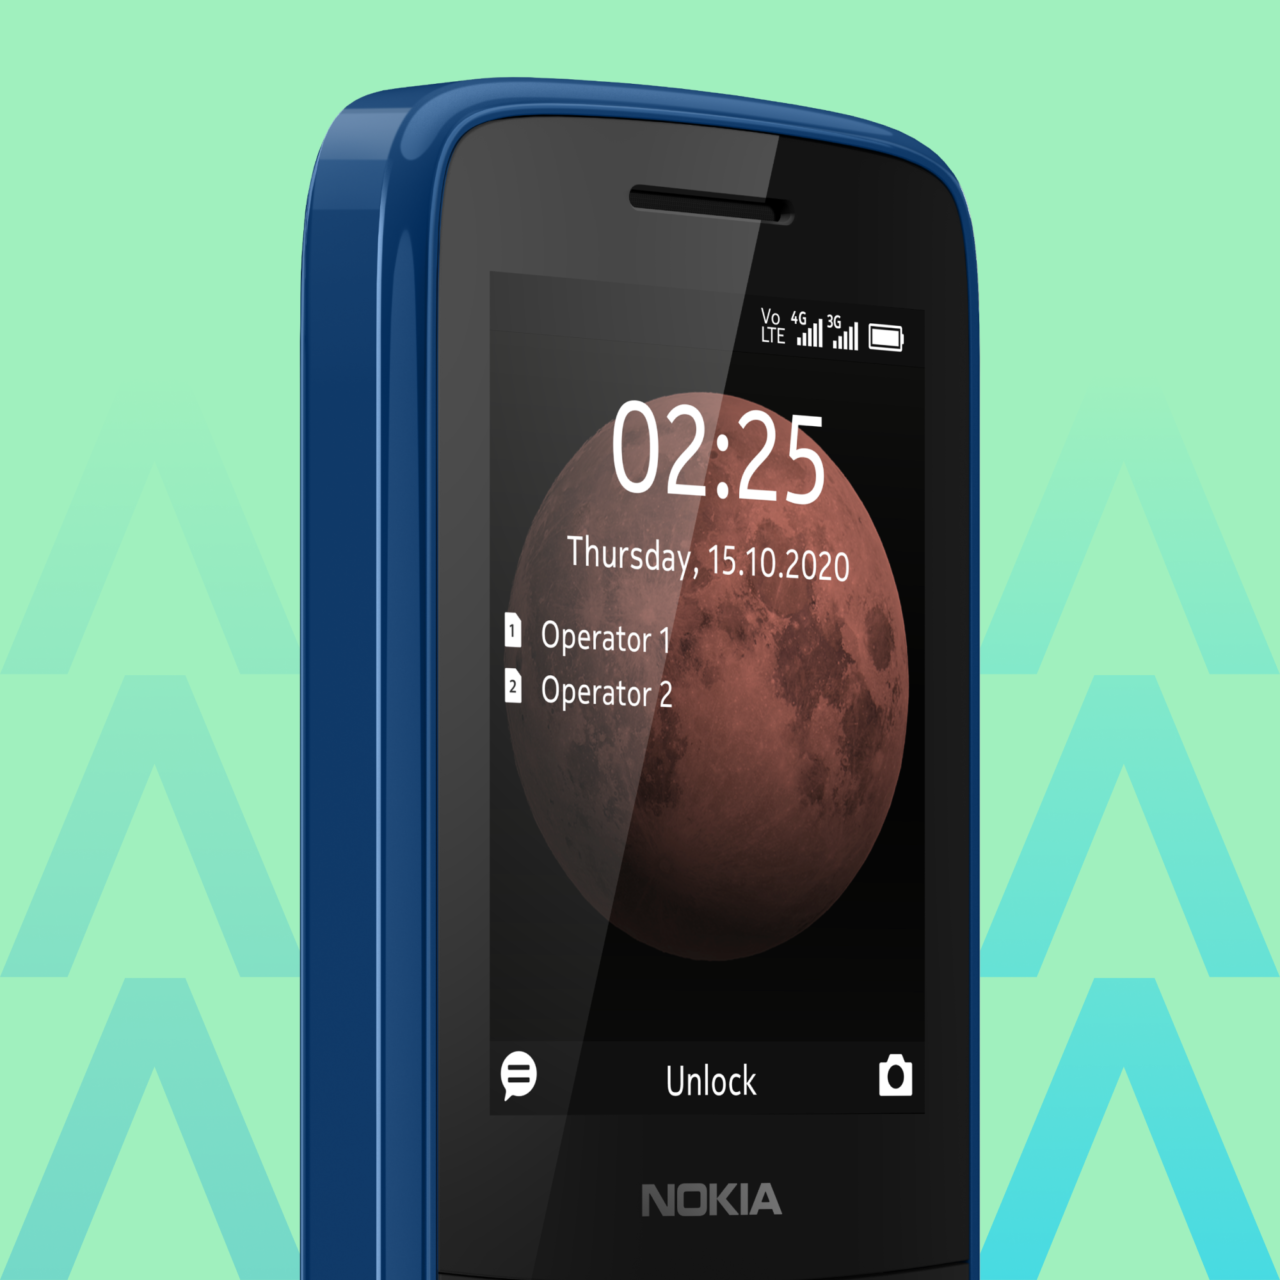 Niebieski telefon Nokia z wyświetlaczem pokazującym godzinę 02:25, datę czwartek, 15 październik 2020, tło z obrazem Marsa, ikony statusu sieci i baterii.